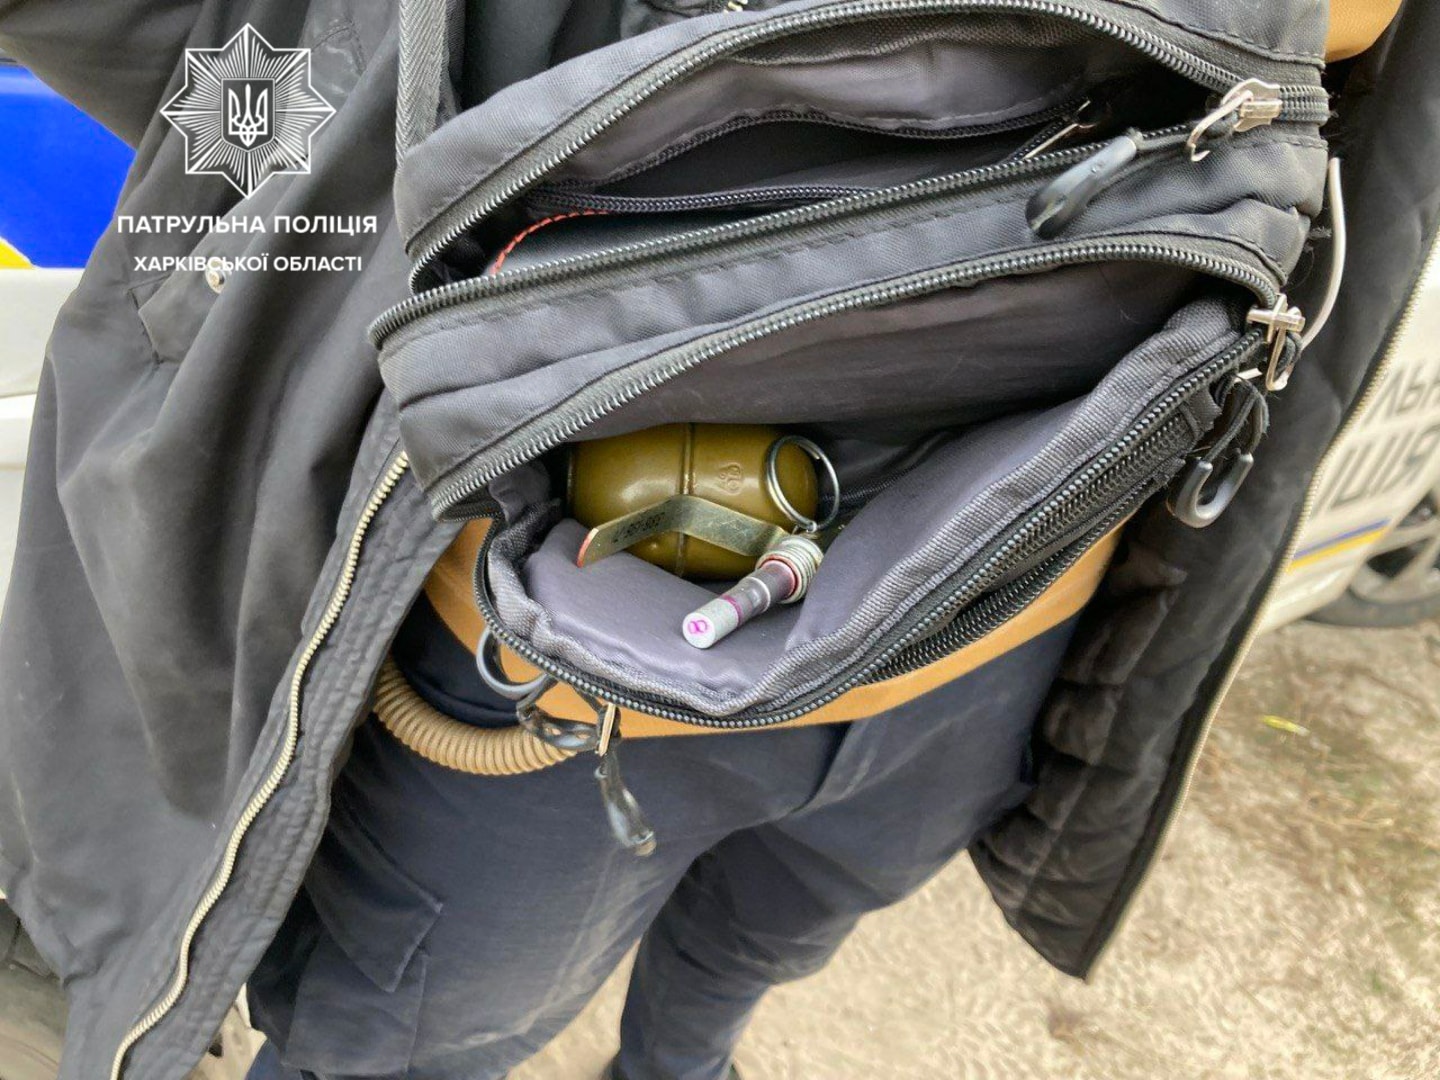 В Харькове у прохожего нашли гранату